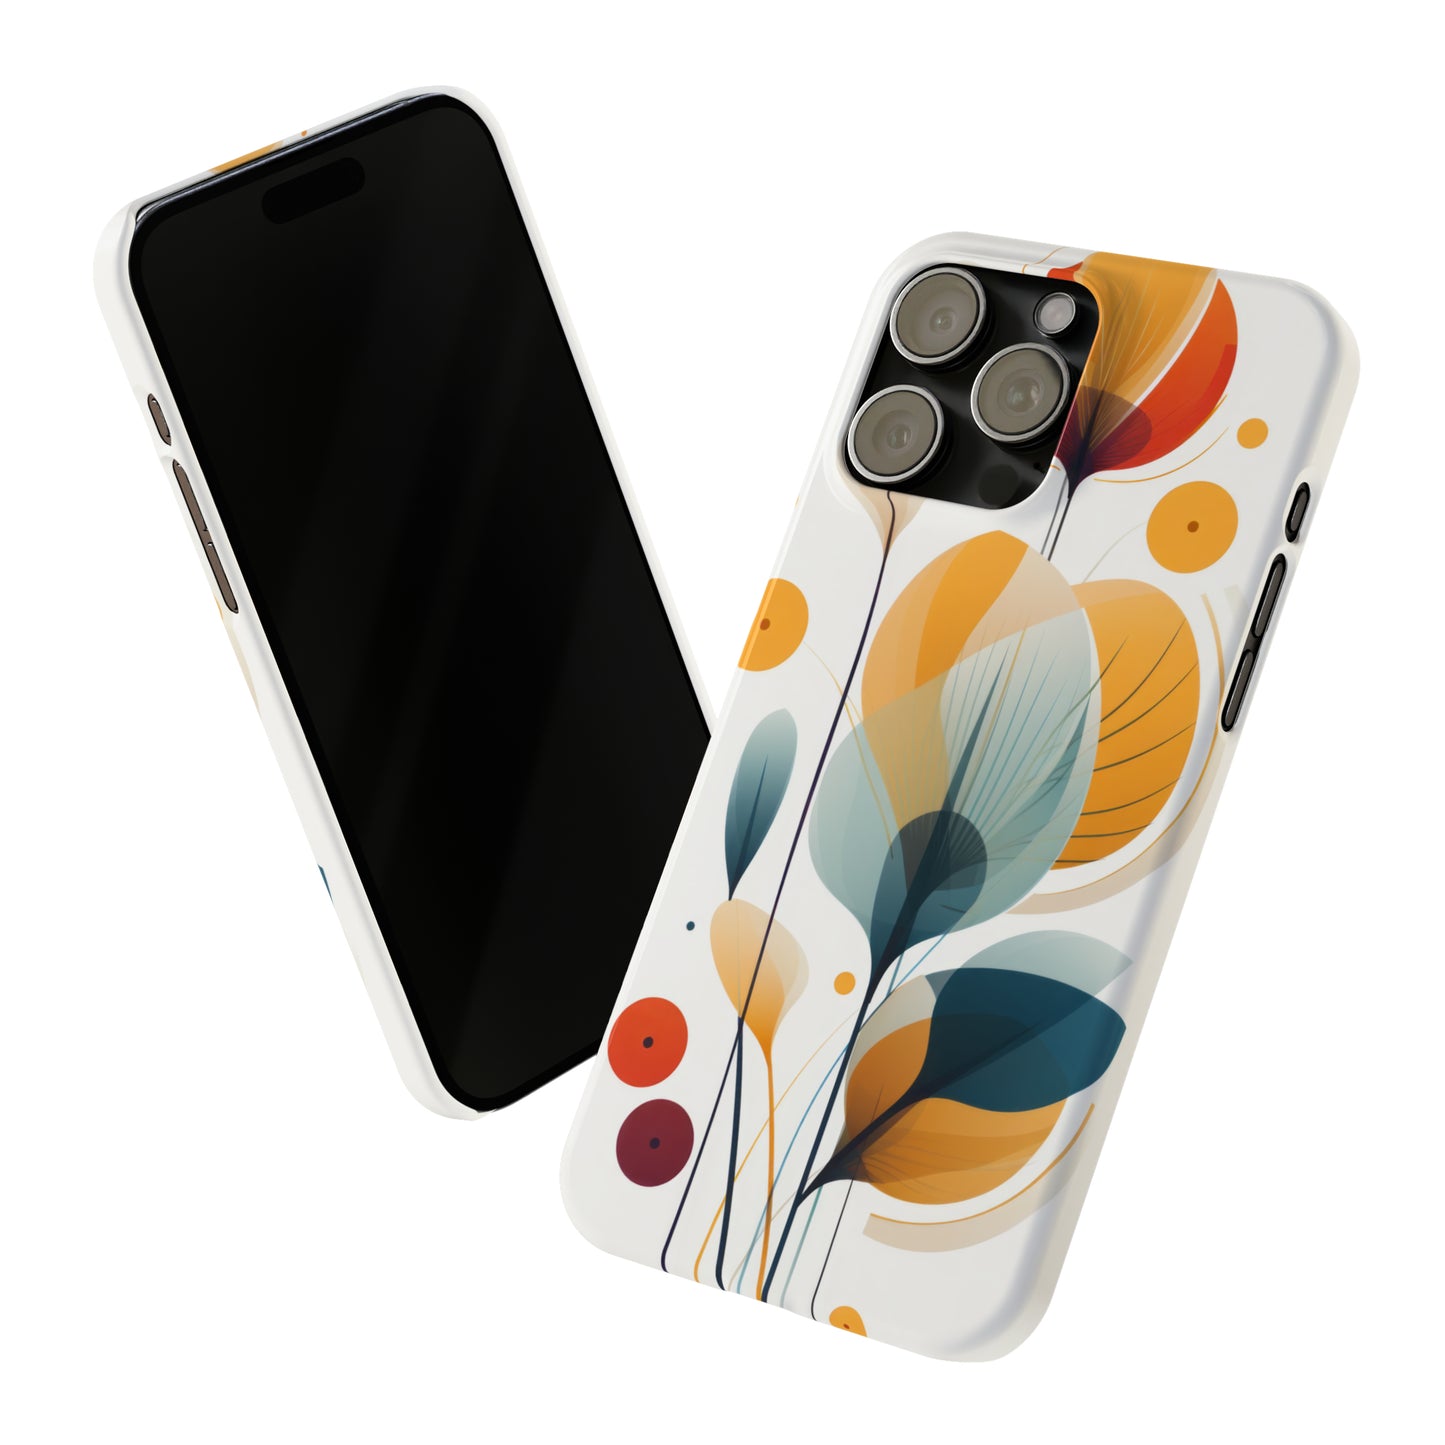 Elegant Minimalistic iPhone Case